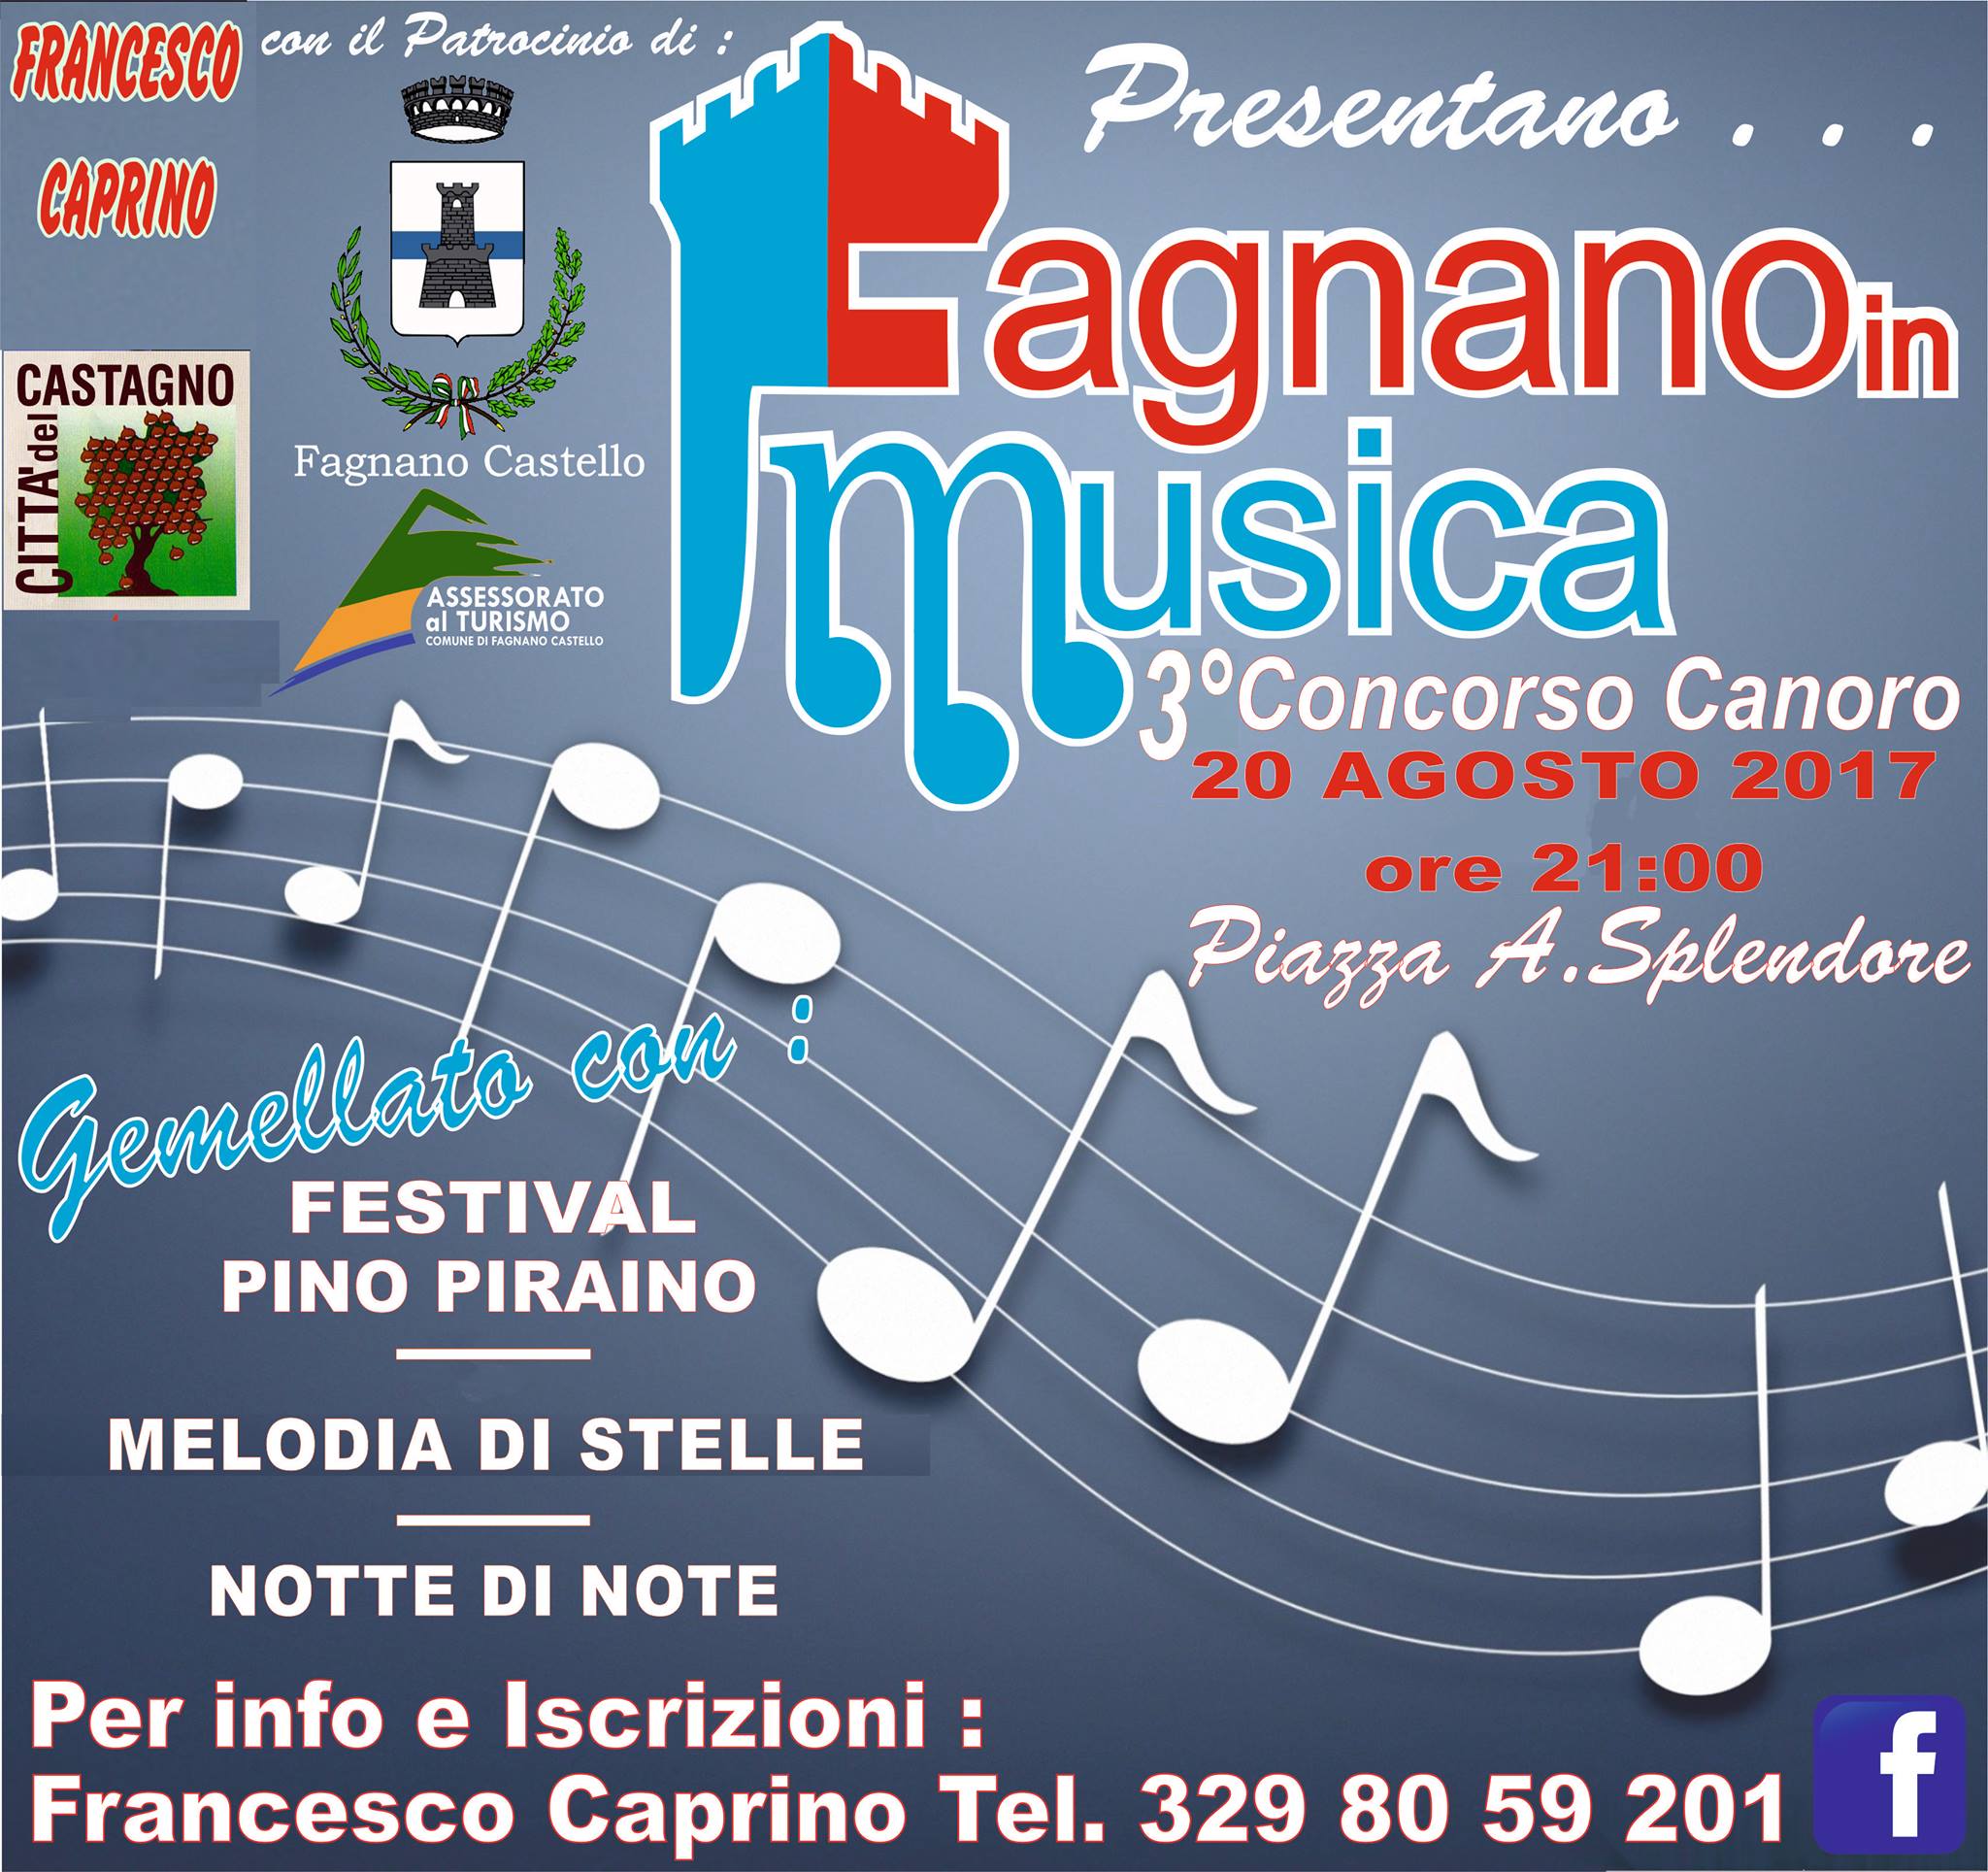 Concorso Canoro ''FagnanoinMusica 2017'' terza edizione